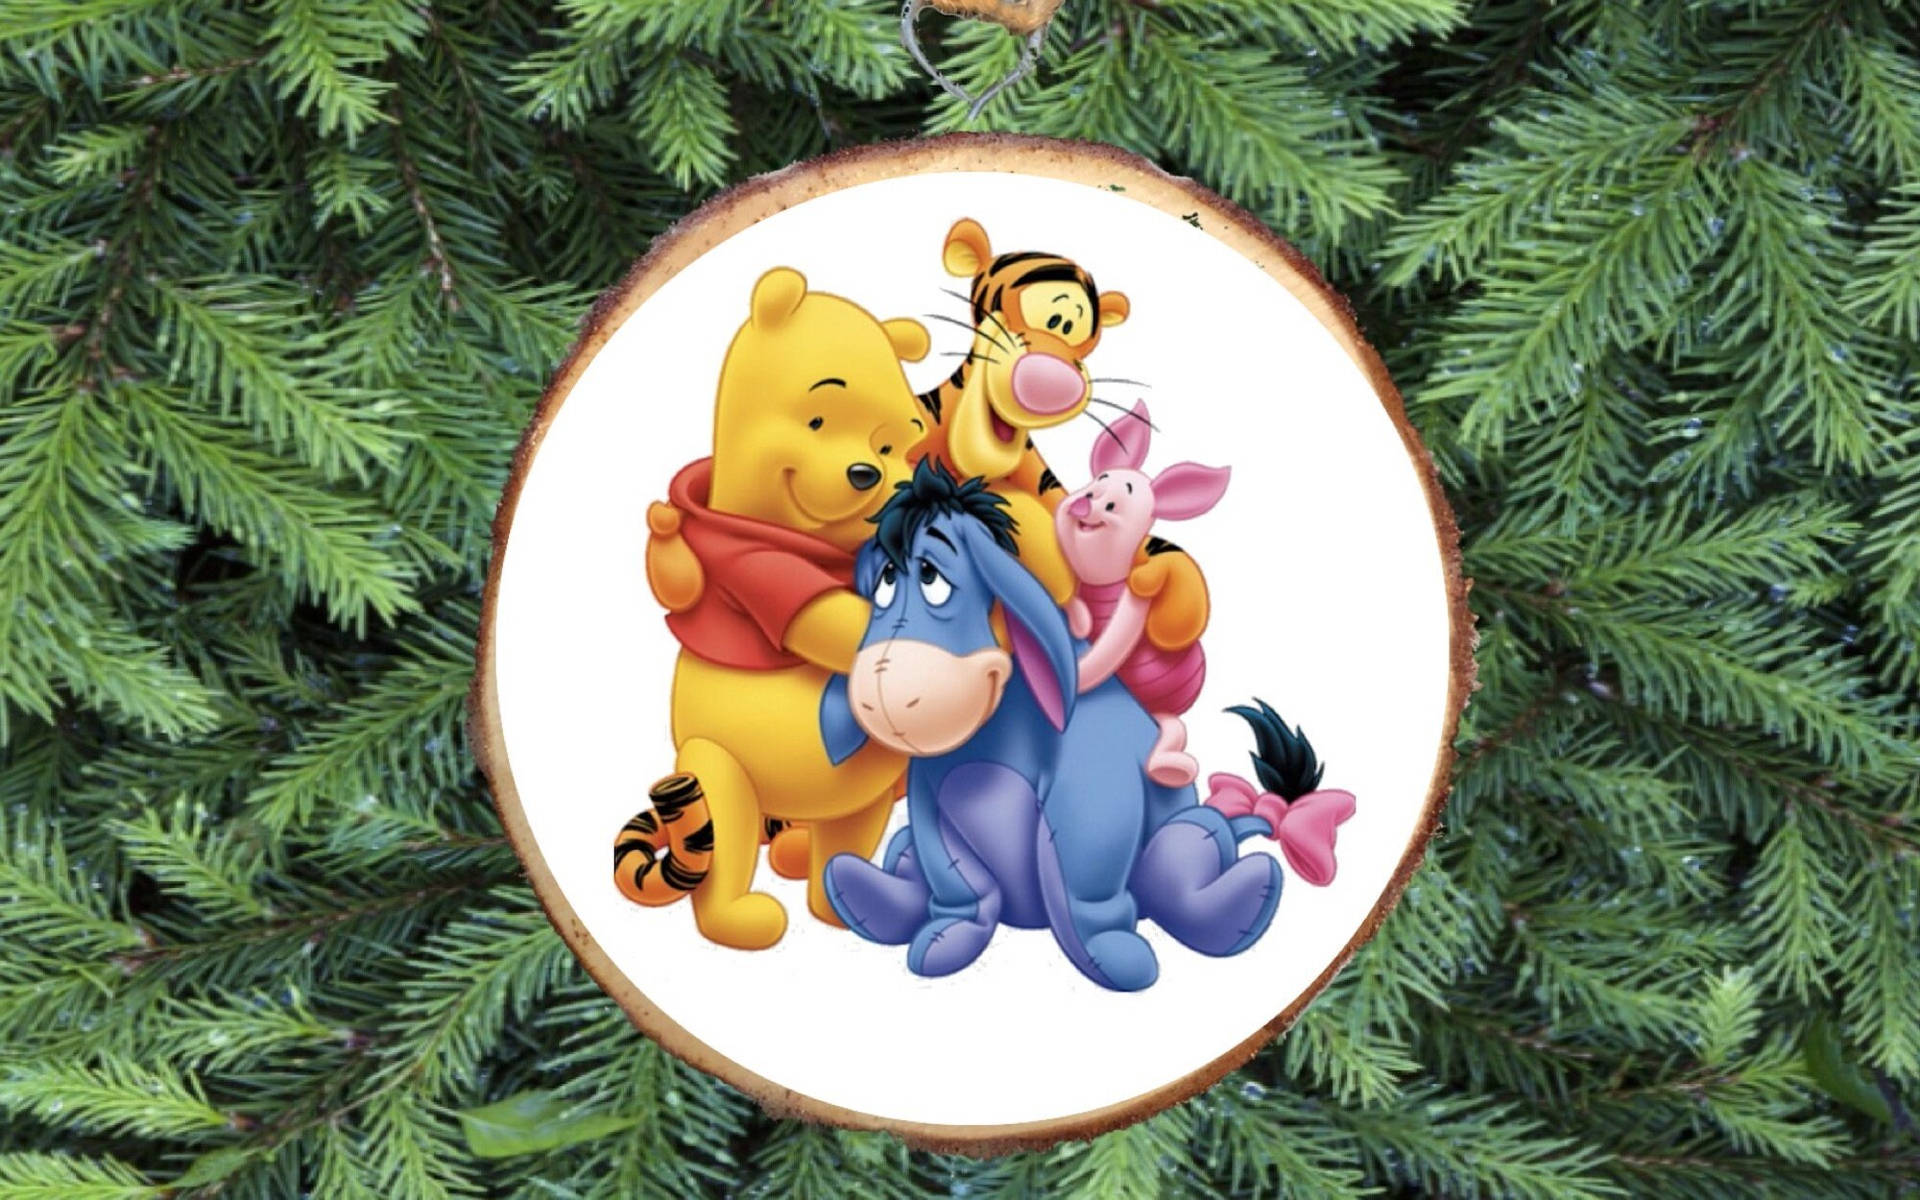 Diffondiallegria Festiva E Goditi Il Natale Con Winnie The Pooh E La Banda! Sfondo